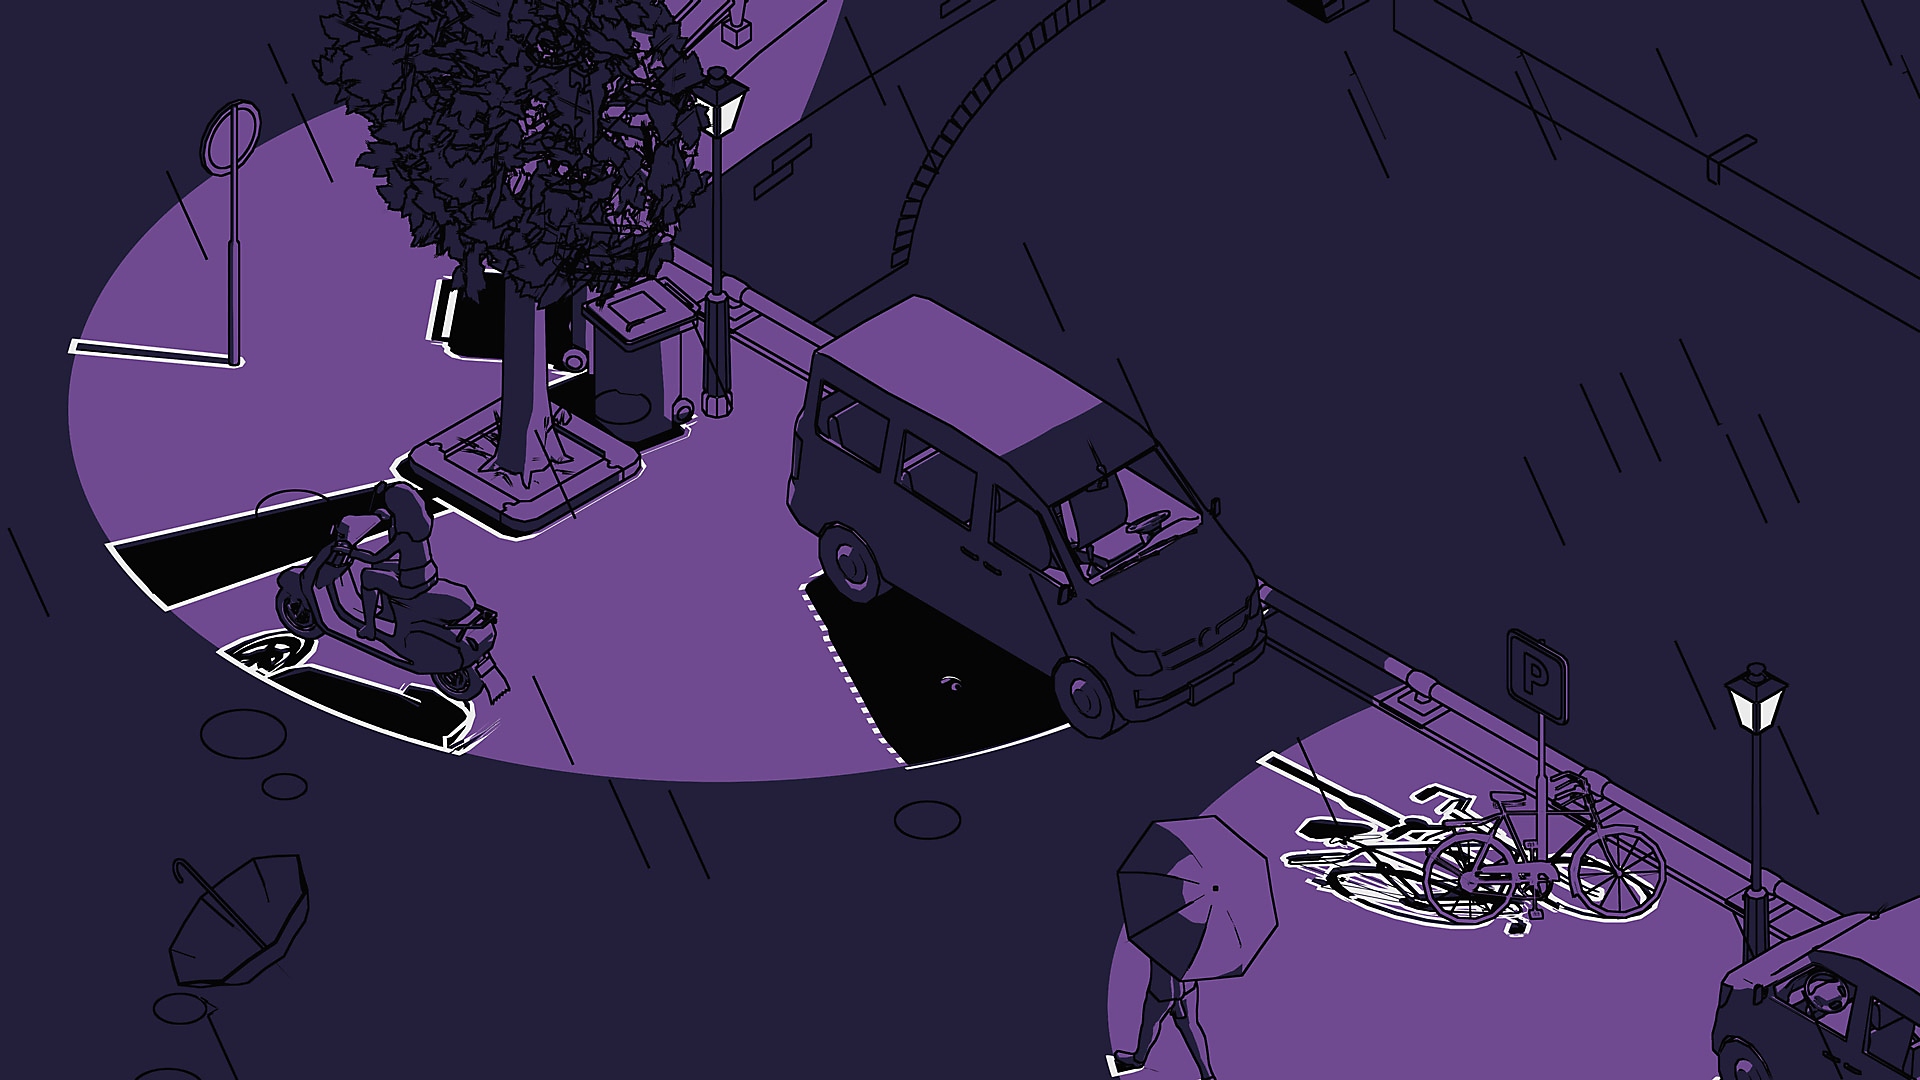 SCHiM - Capture d'écran montrant une rue de nuit